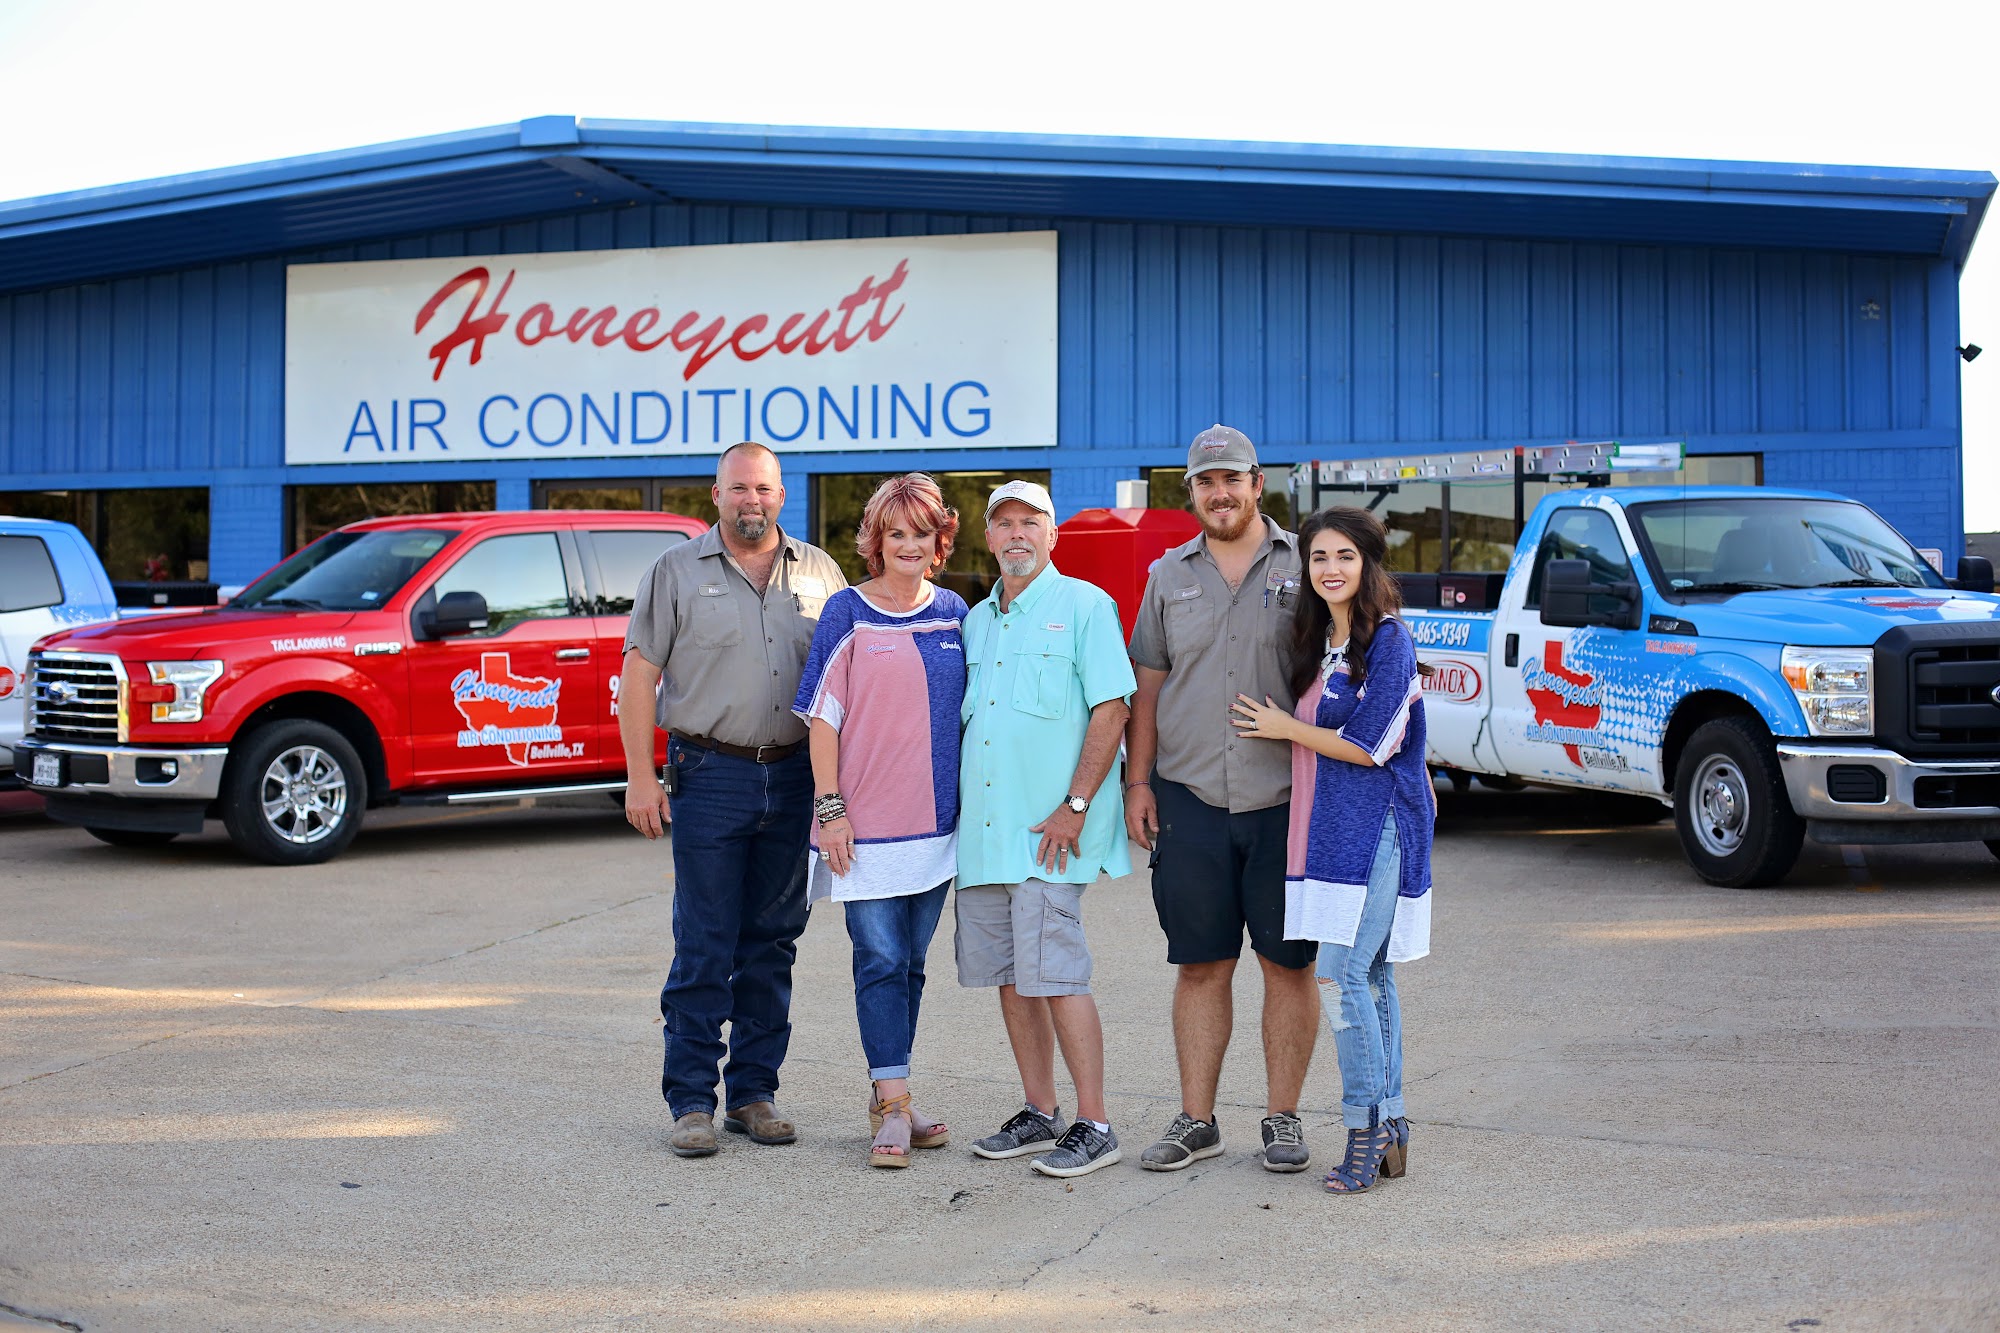 Honeycutt Air Conditioning 715 E Main St, Bellville Texas 77418